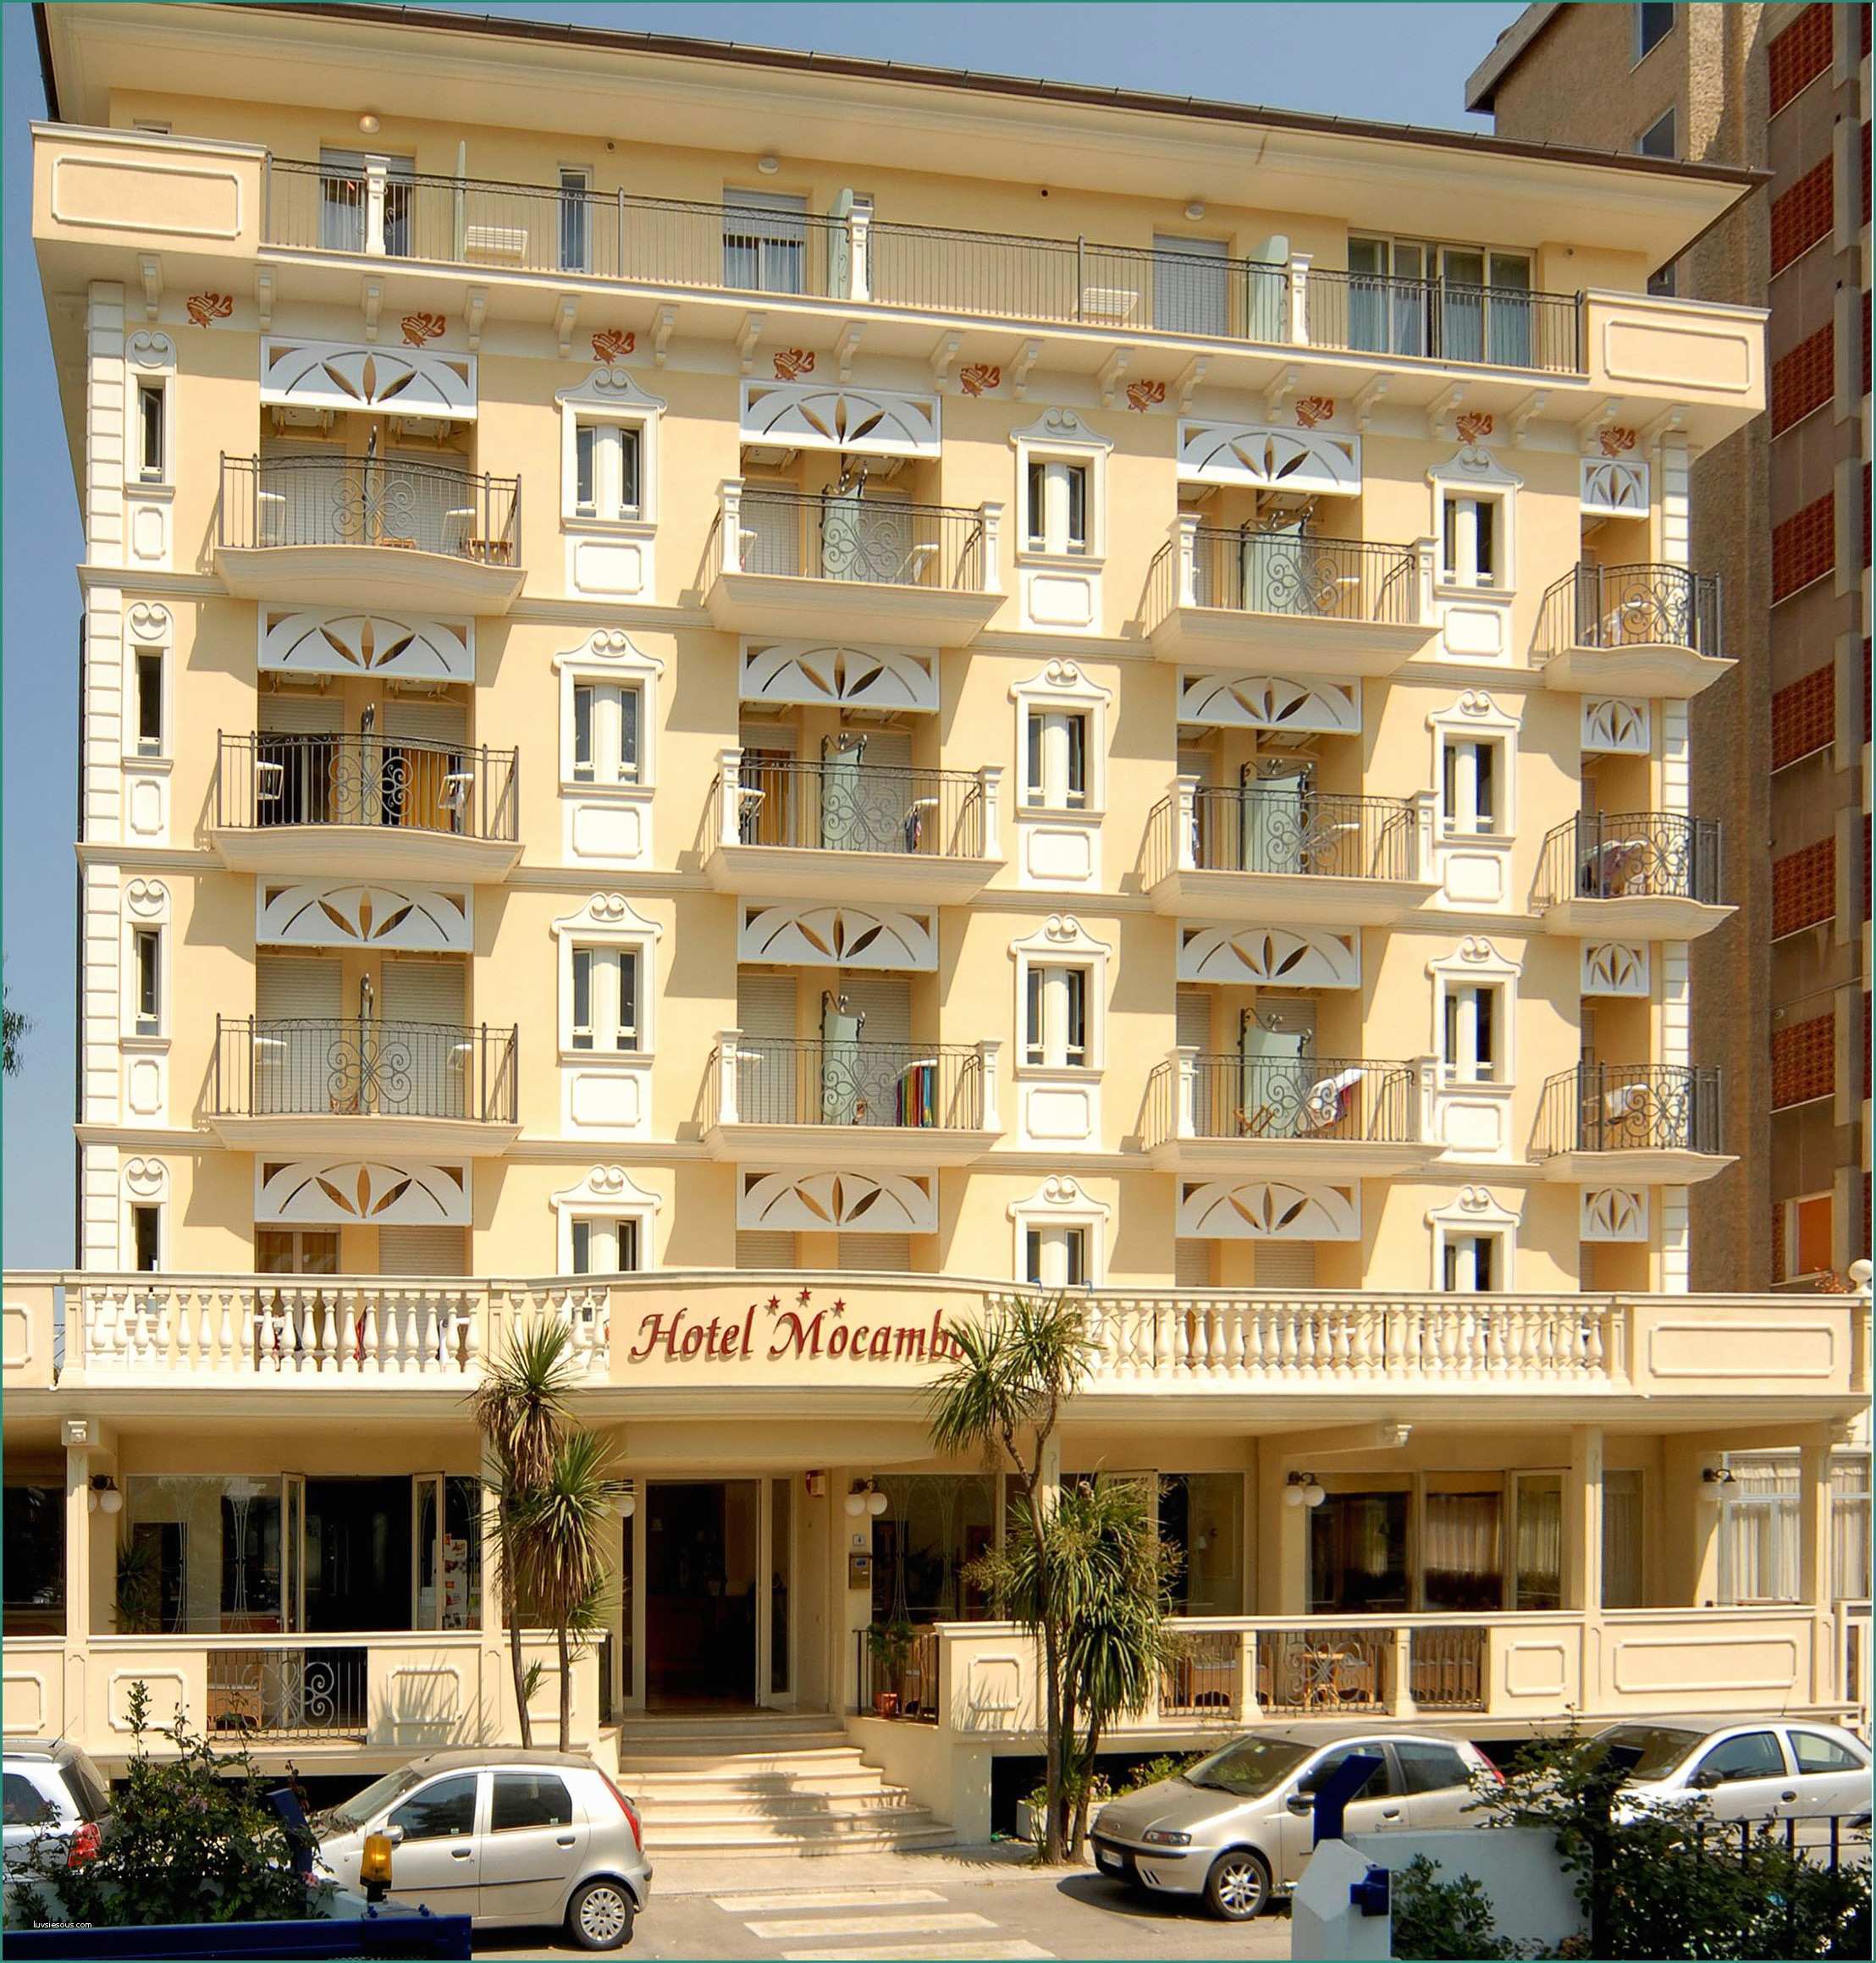 Hotel Altis San Benedetto Del Tronto Recensioni E Hotel Mocambo